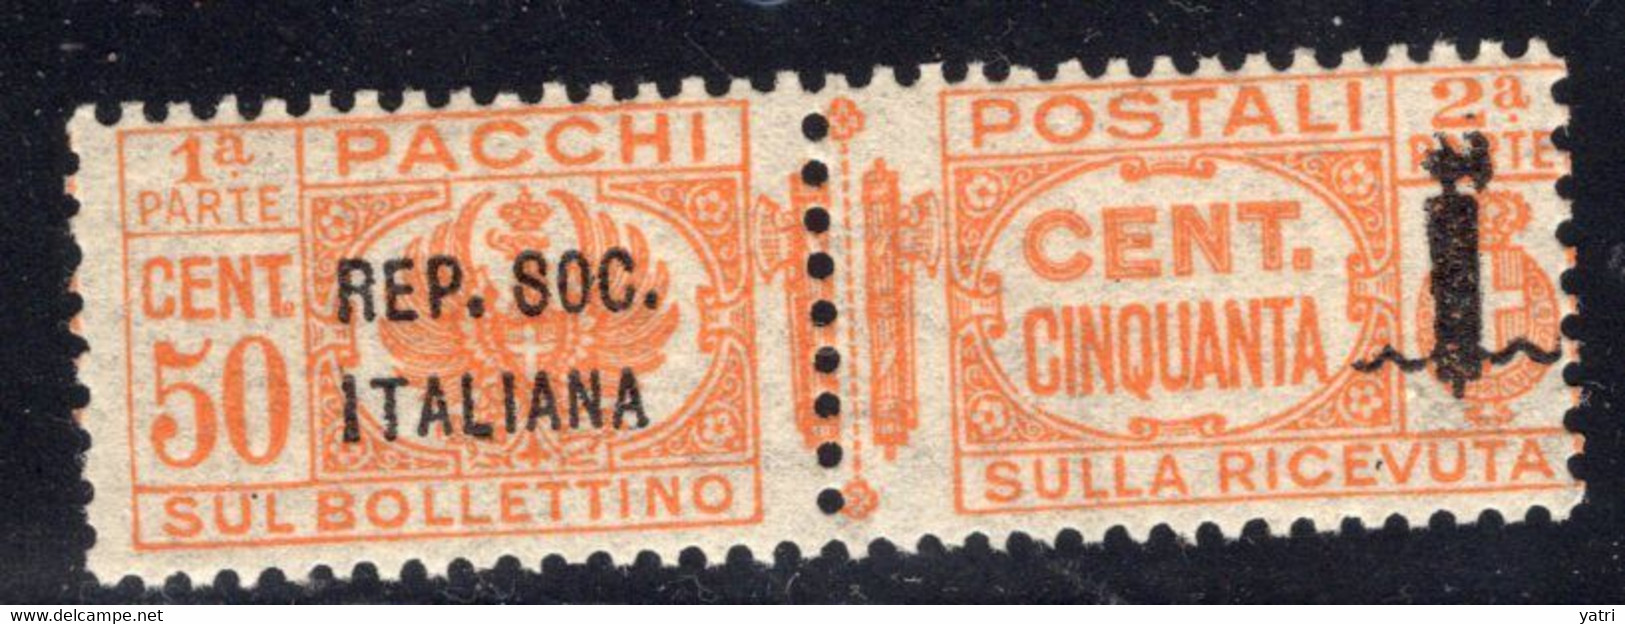 Repubblica Sociale (1944) - Pacchi Postali, 50 Cent. ** - Postal Parcels